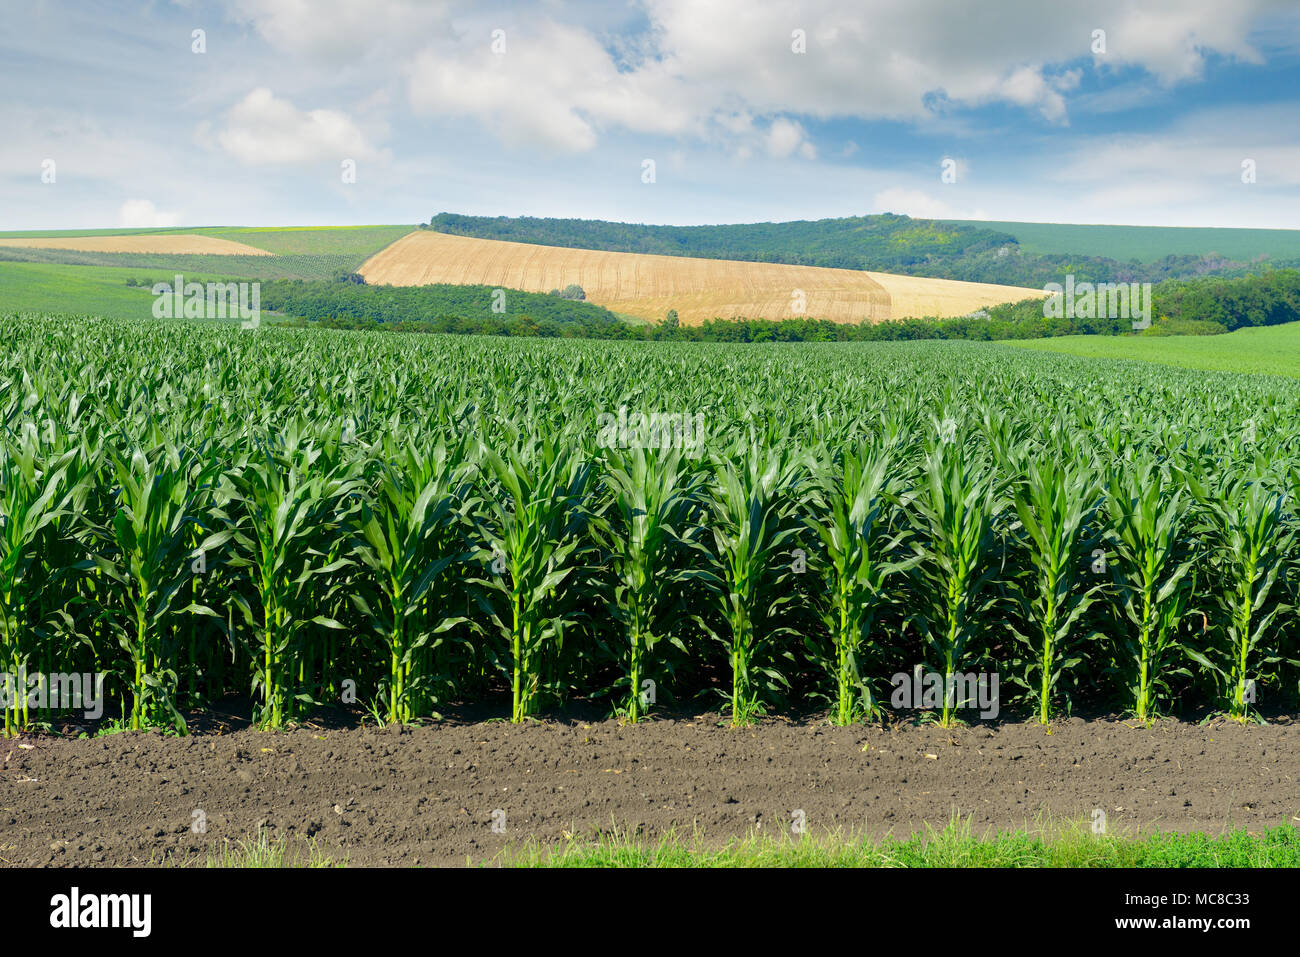 Campo de maíz en las pintorescas colinas y las nubes blancas en el cielo. Foto de stock